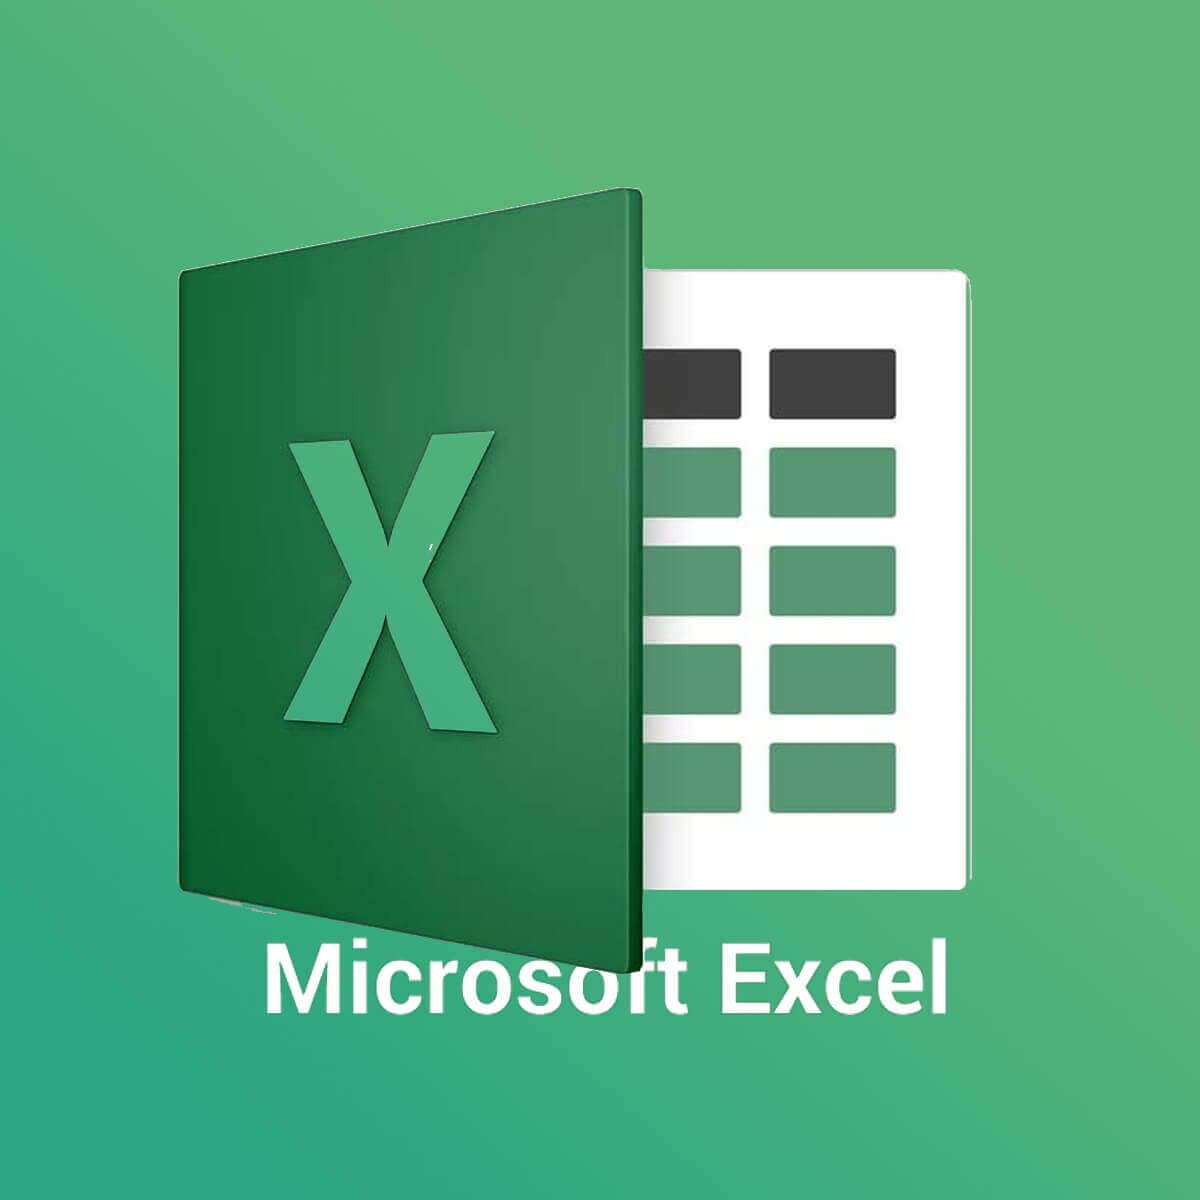 Riešenie: Tabuľka Excel nie je správne pridaná 64